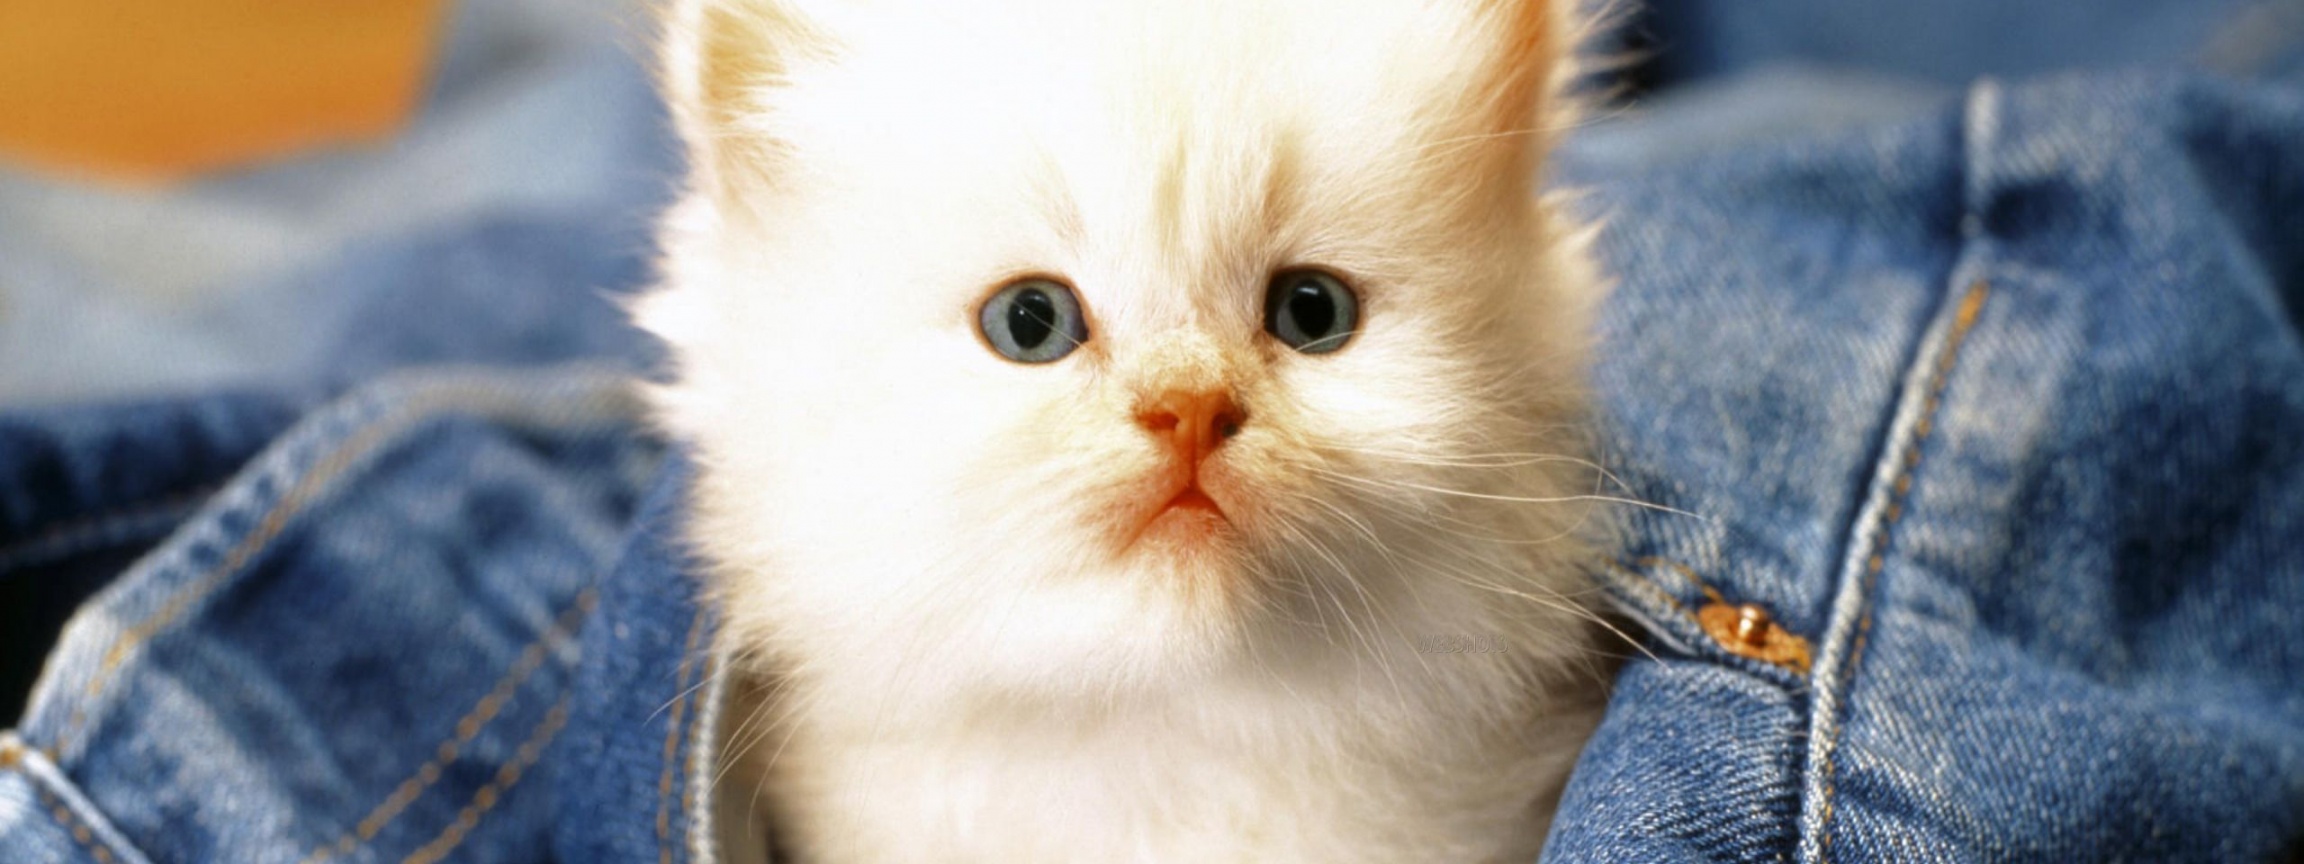 Cute Cat Baby